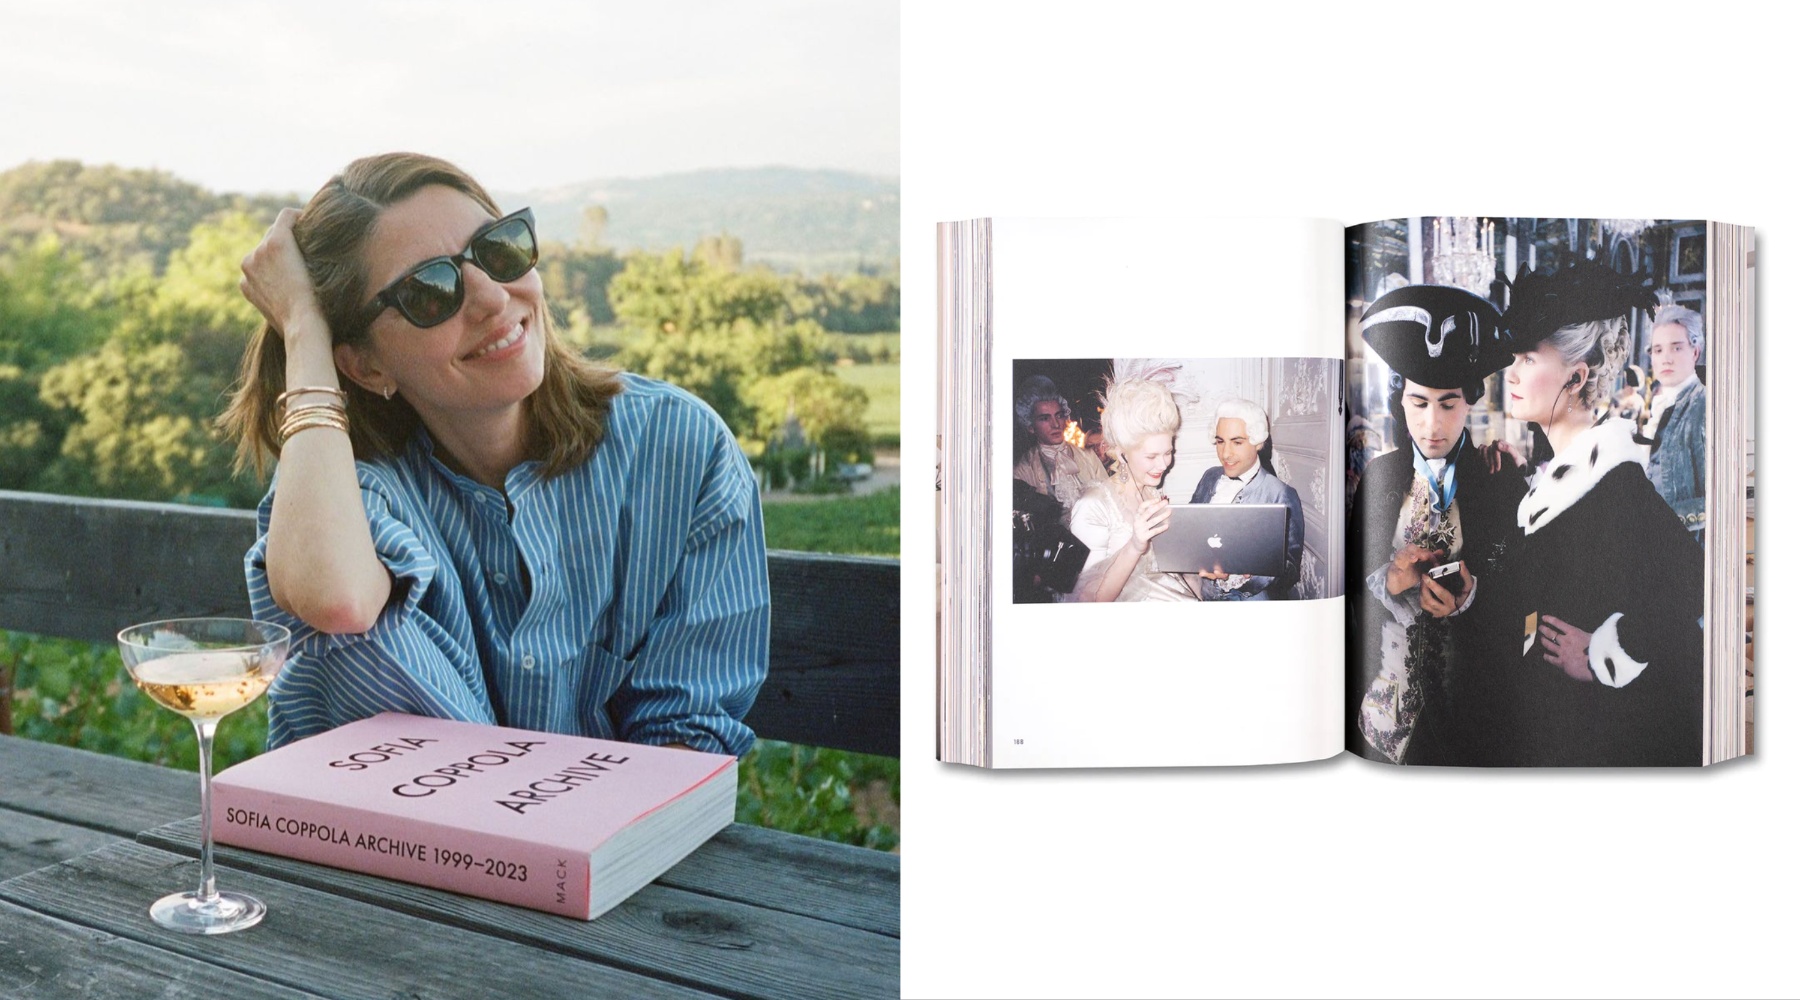 Izašla je knjiga „Sofia Coppola: Archive“ – prelistavamo ovo neverovatno izdanje